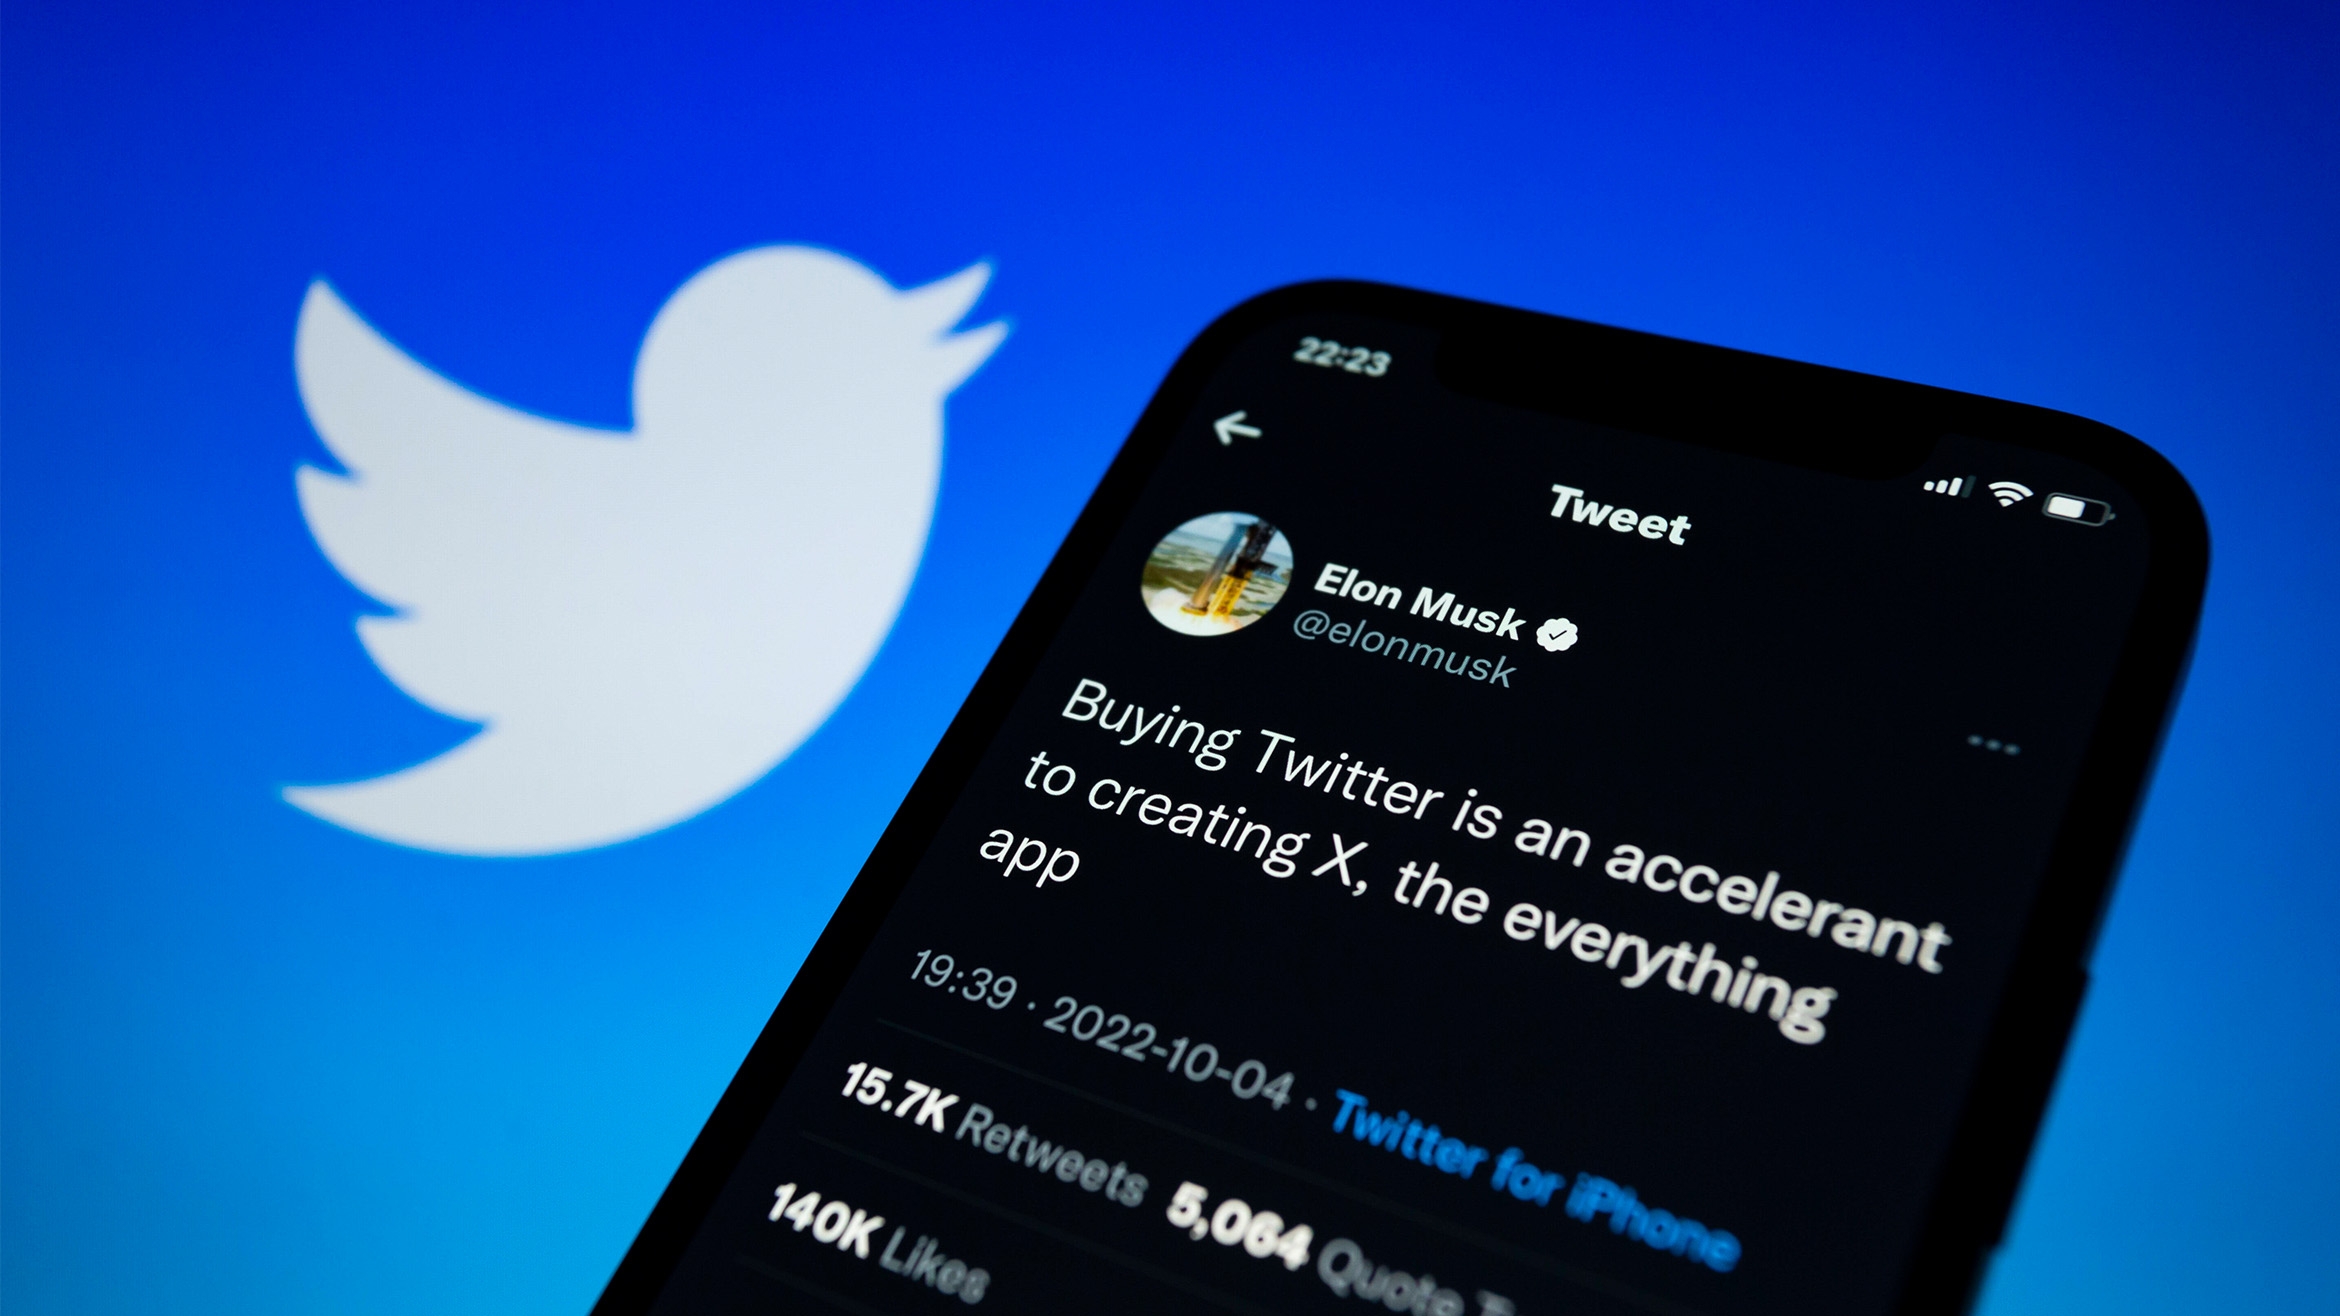 "Der Kauf von Twitter ist ein Beschleuniger für die Entwicklung von X, der App für alles" -